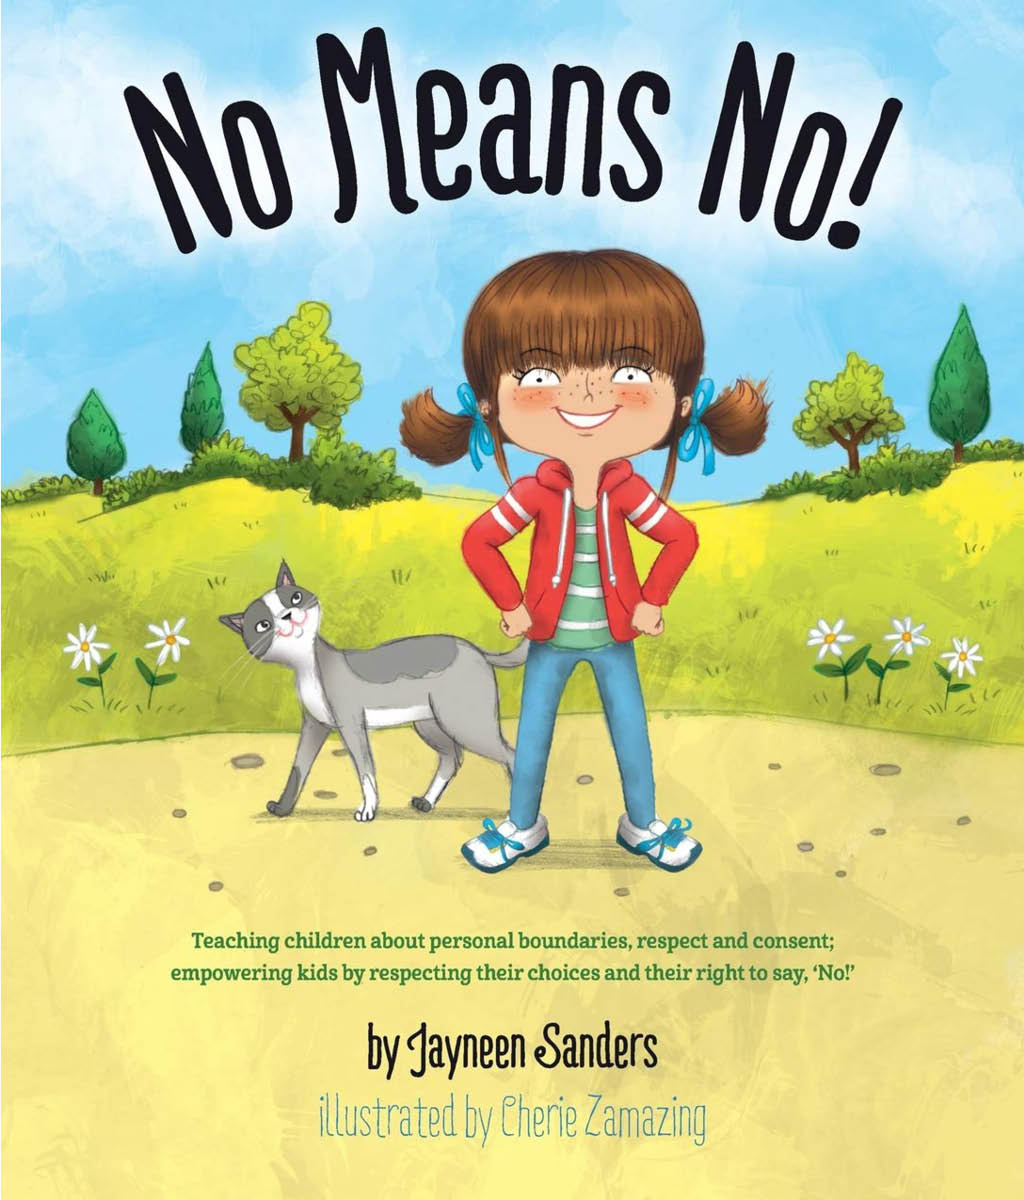 No Means No! by Jayneen Sanders